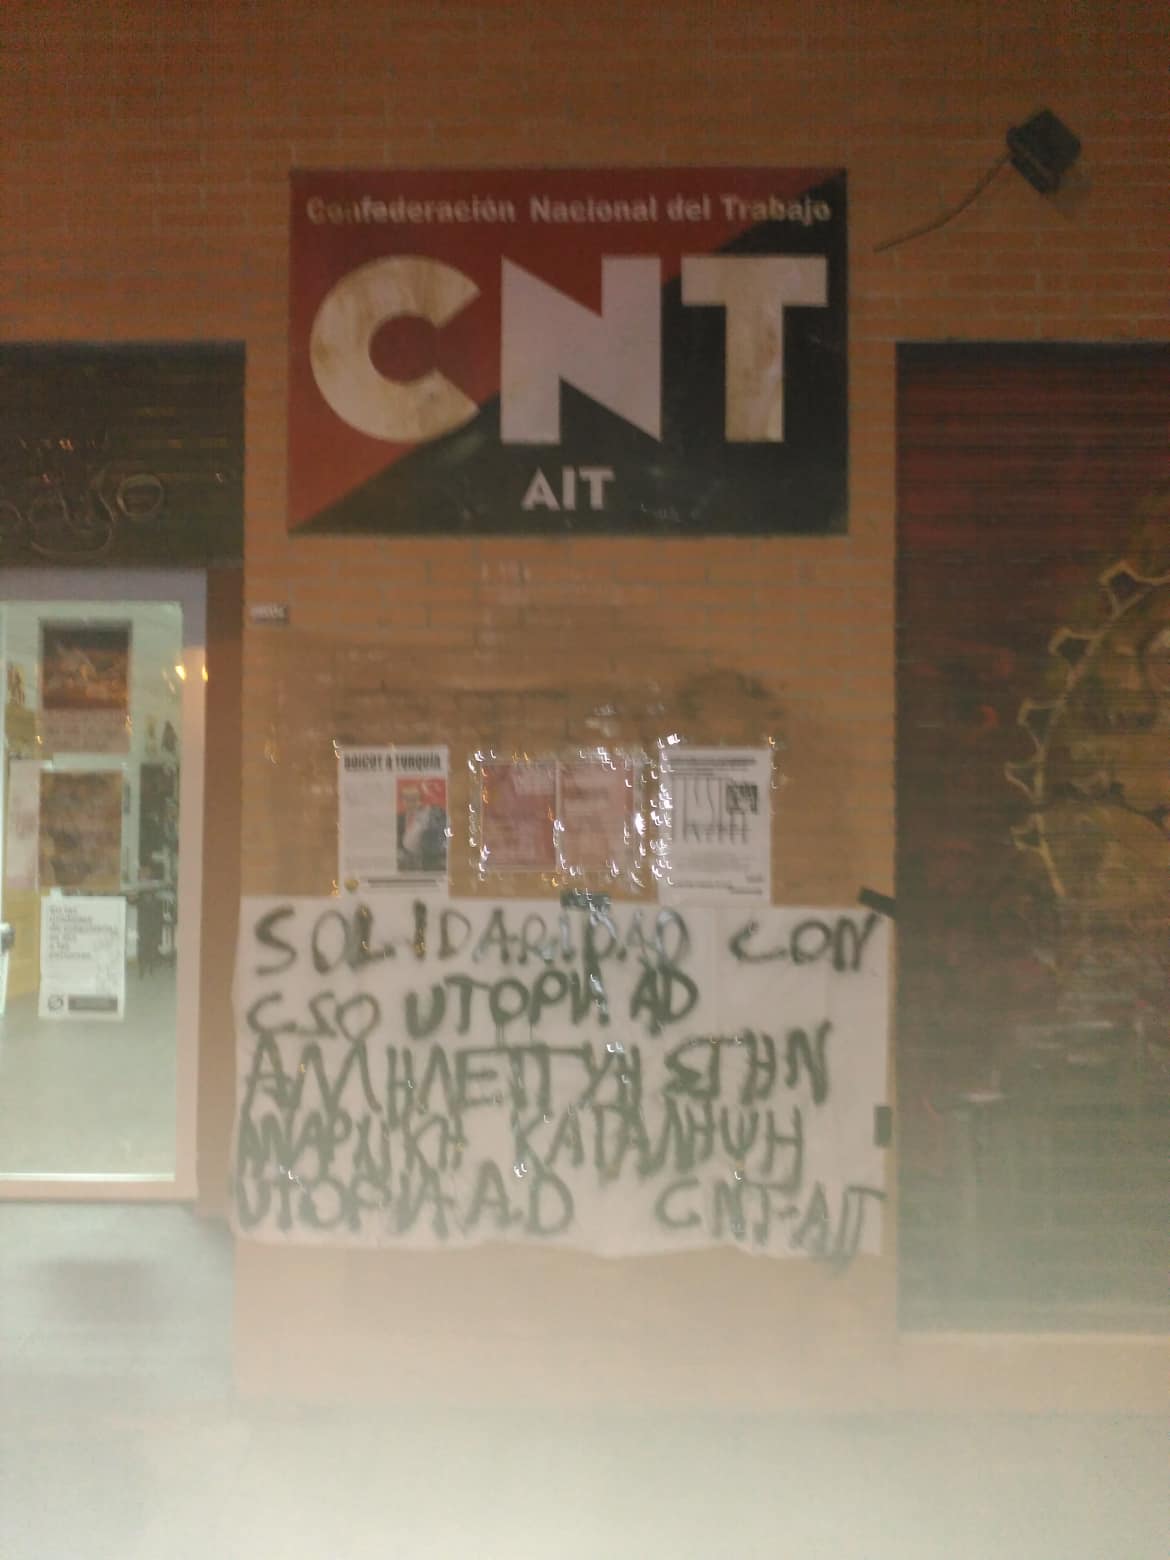 Ισπανία: Αλληλεγγύη στα συντρόφια της κατάληψης UTOPIA A.D.